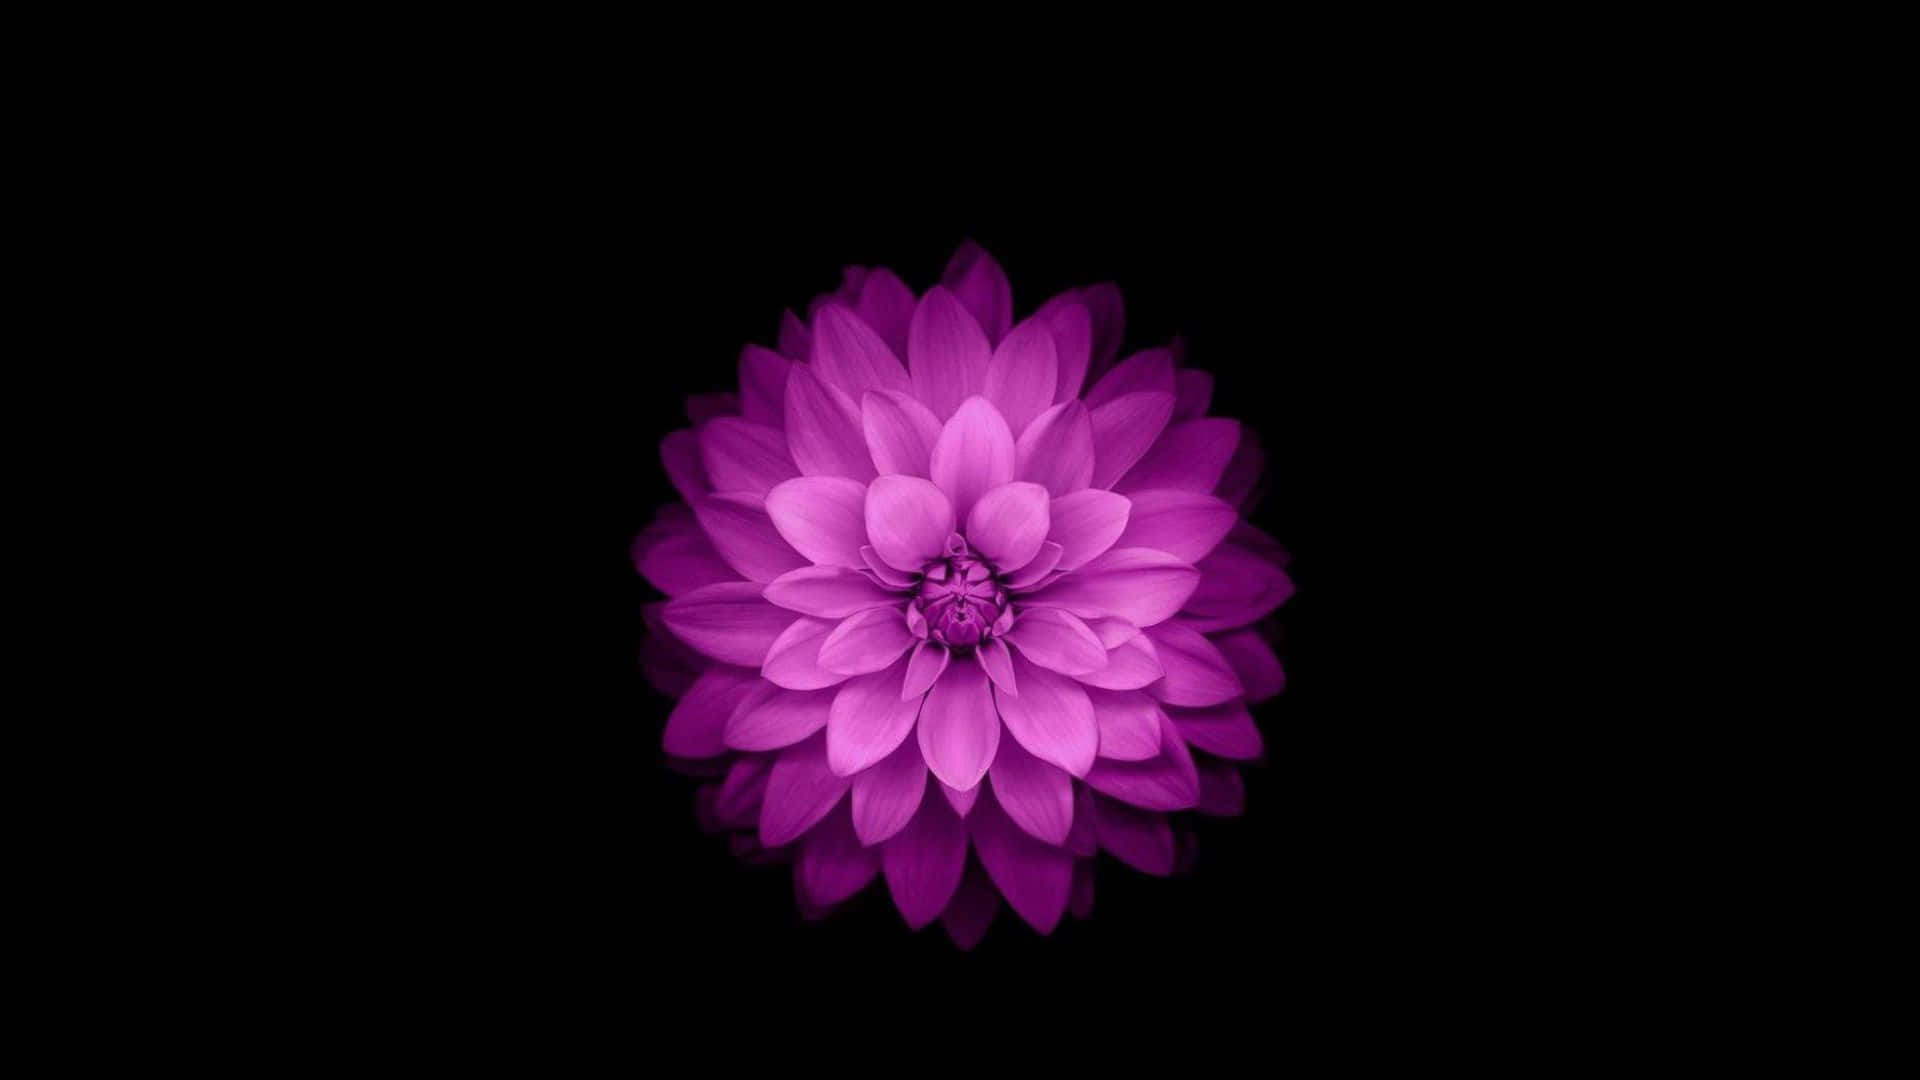 Vibrant_ Purple_ Flower_ Against_ Black_ Background.jpg Wallpaper